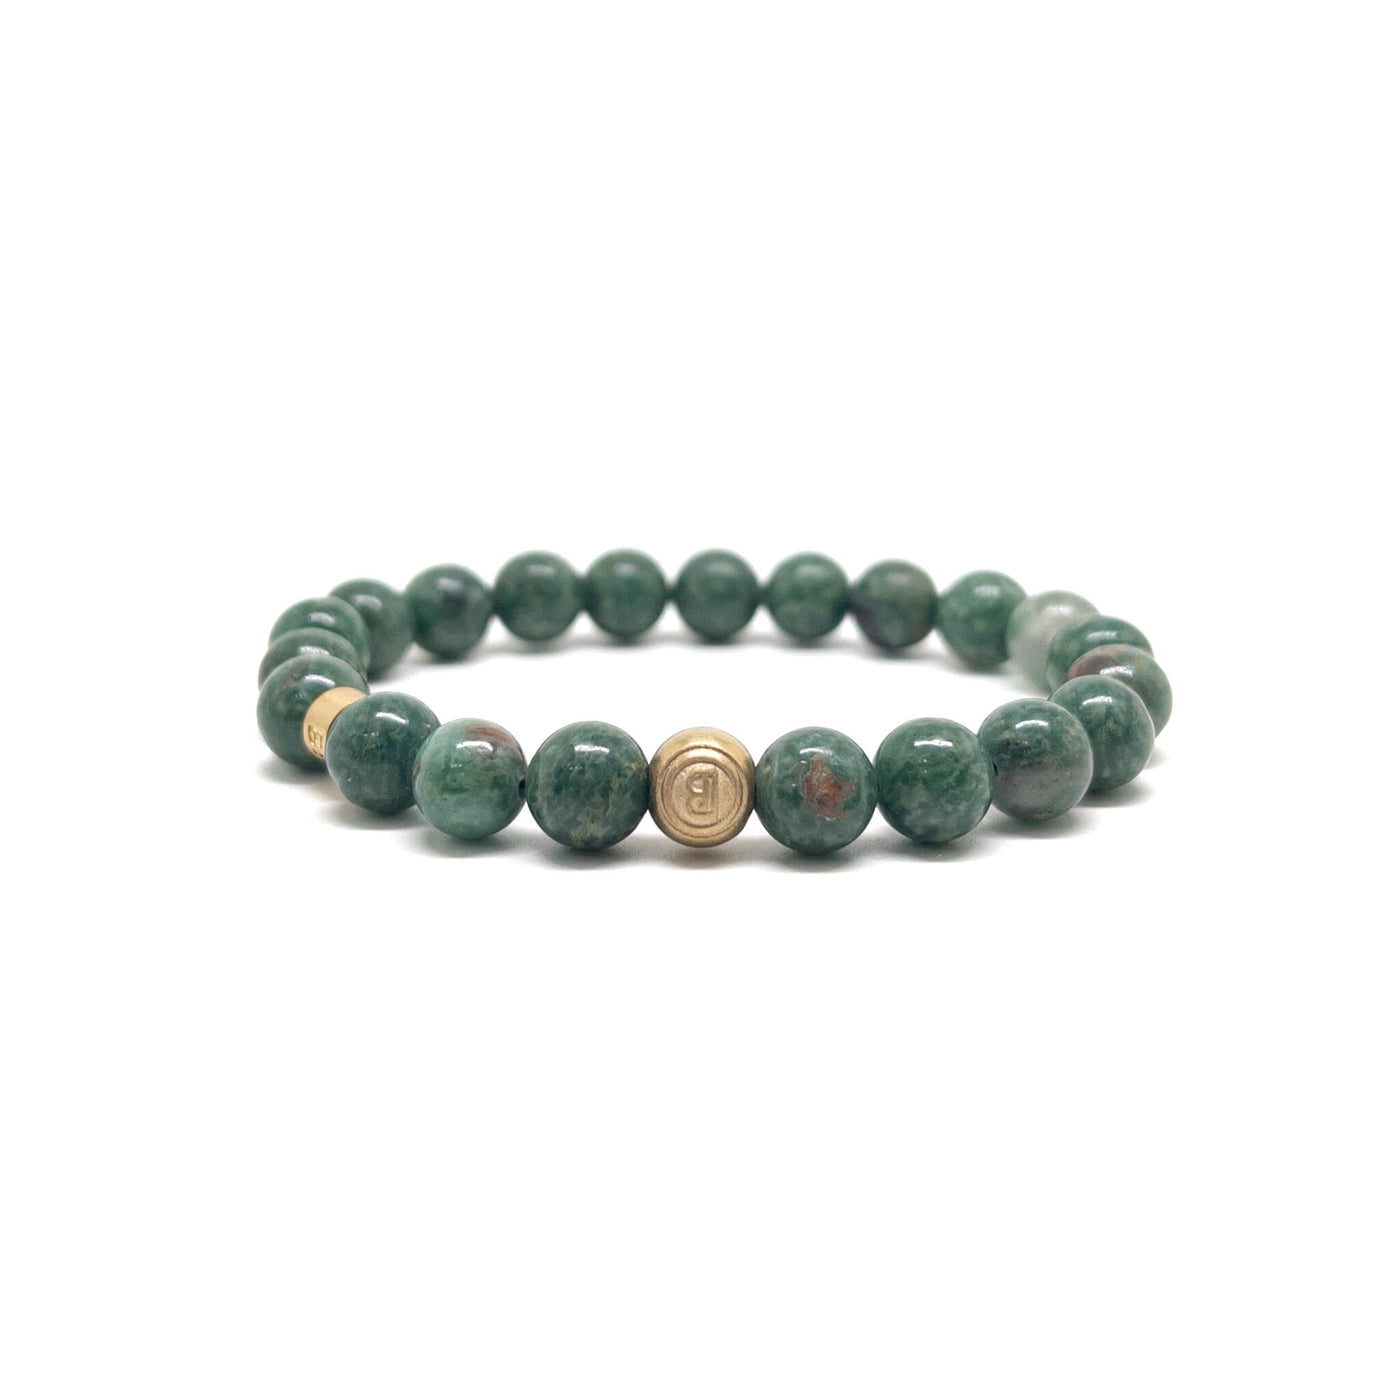 The Full African Jade Signed Bracelet